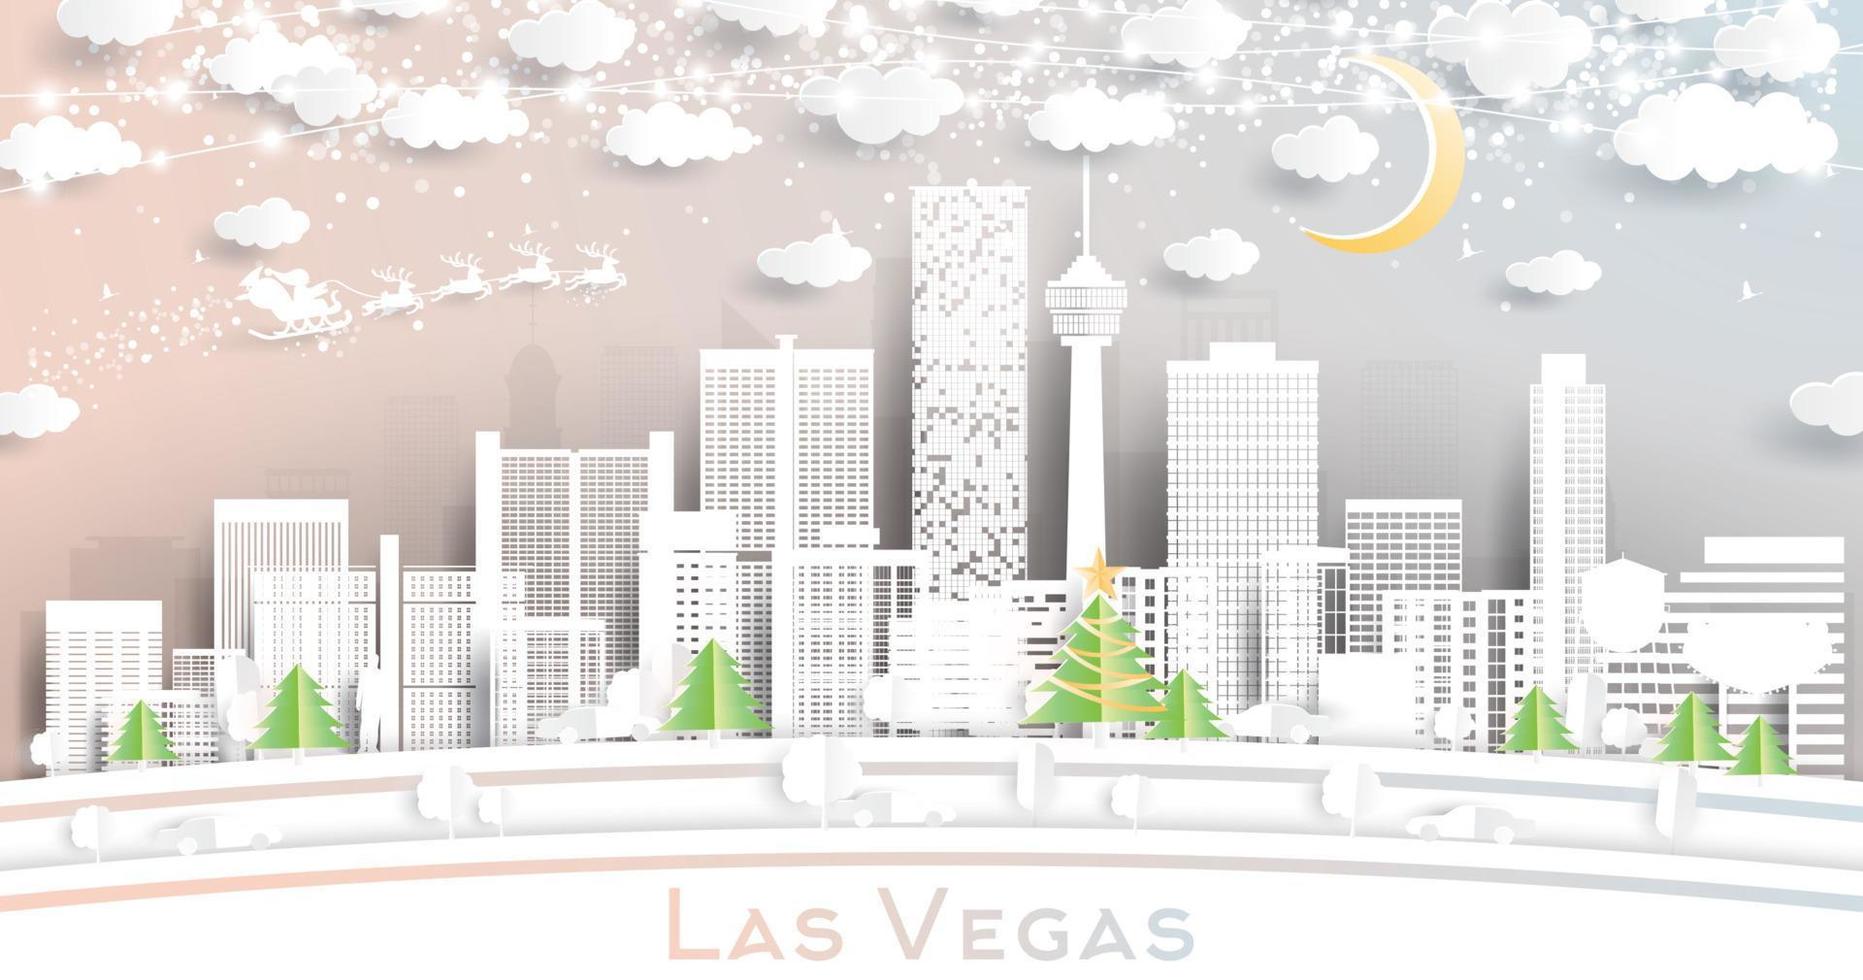 las vegas Nevada Verenigde Staten van Amerika stad horizon in papier besnoeiing stijl met sneeuwvlokken, maan en neon guirlande. vector